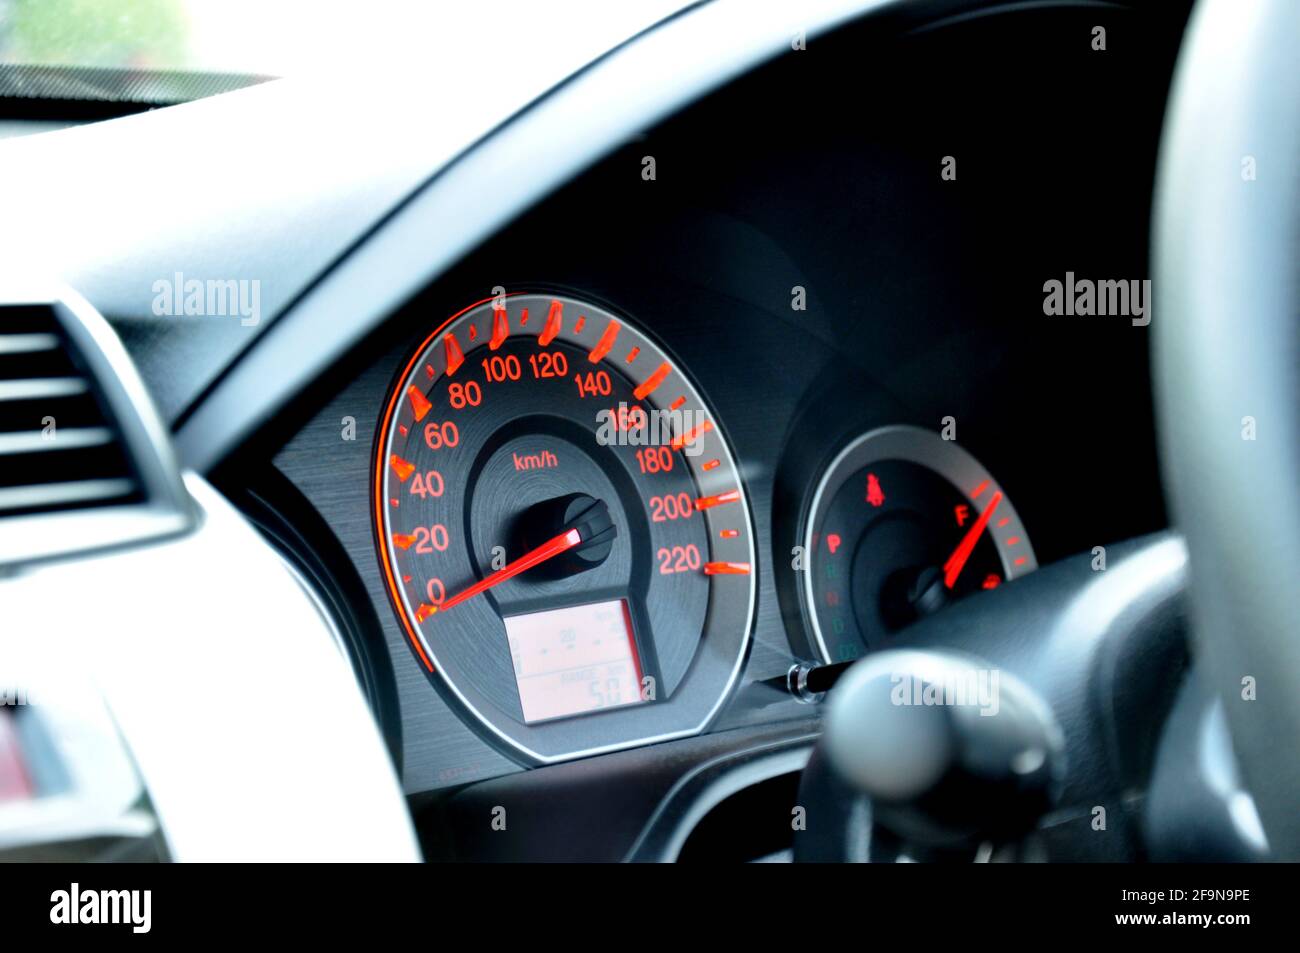 Tableau de bord de voiture avec indicateur de vitesse ou tachymètre Banque D'Images